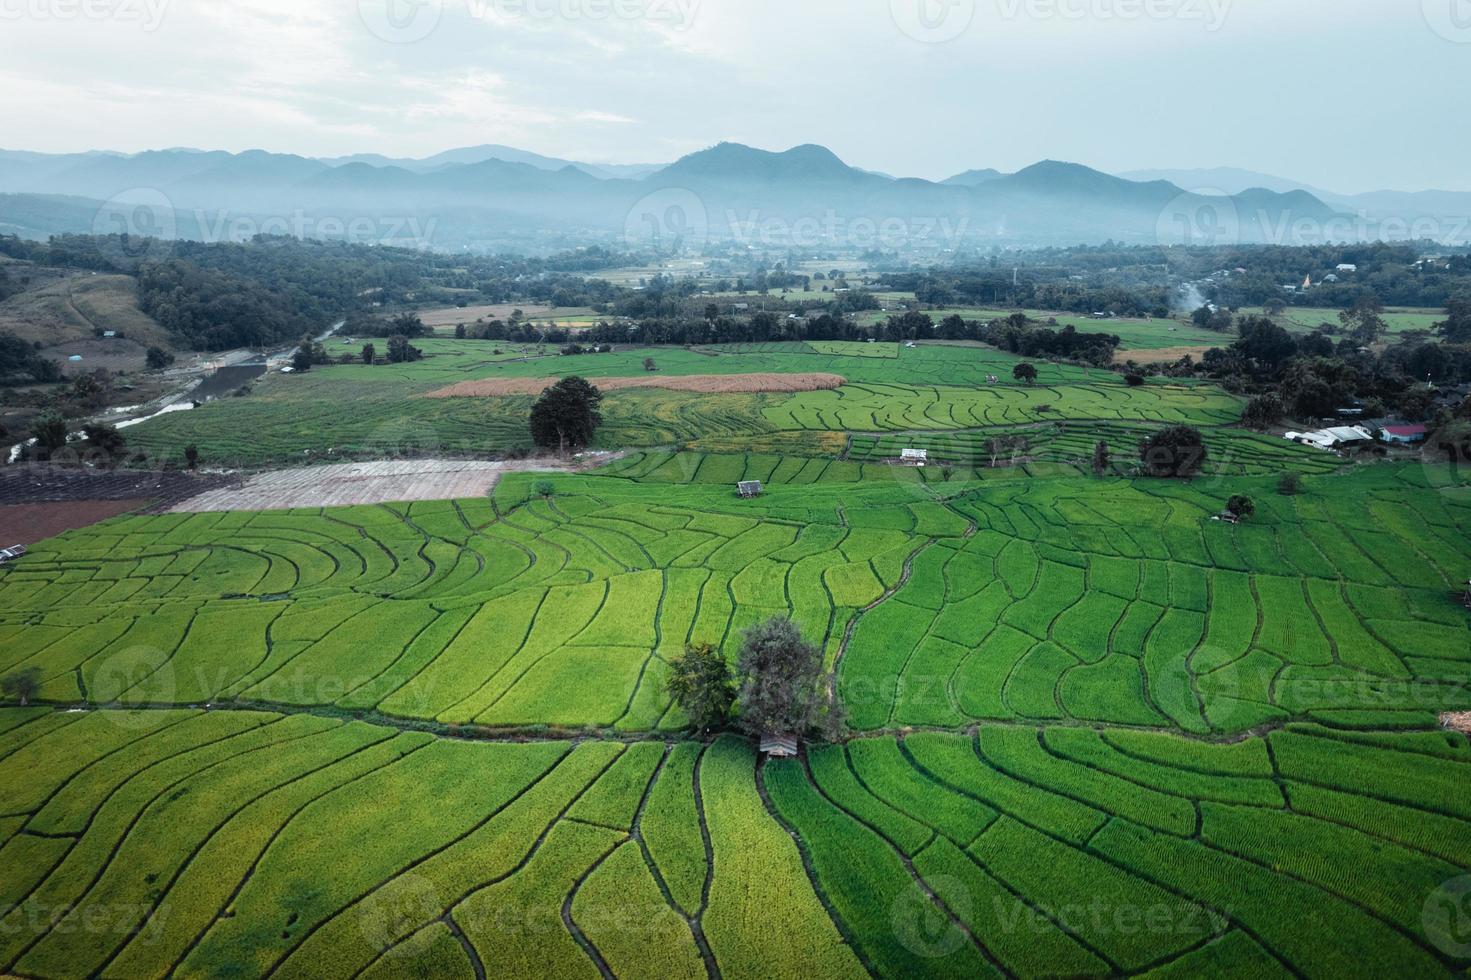 risaie verdi e agricoltura vista dall'alto foto